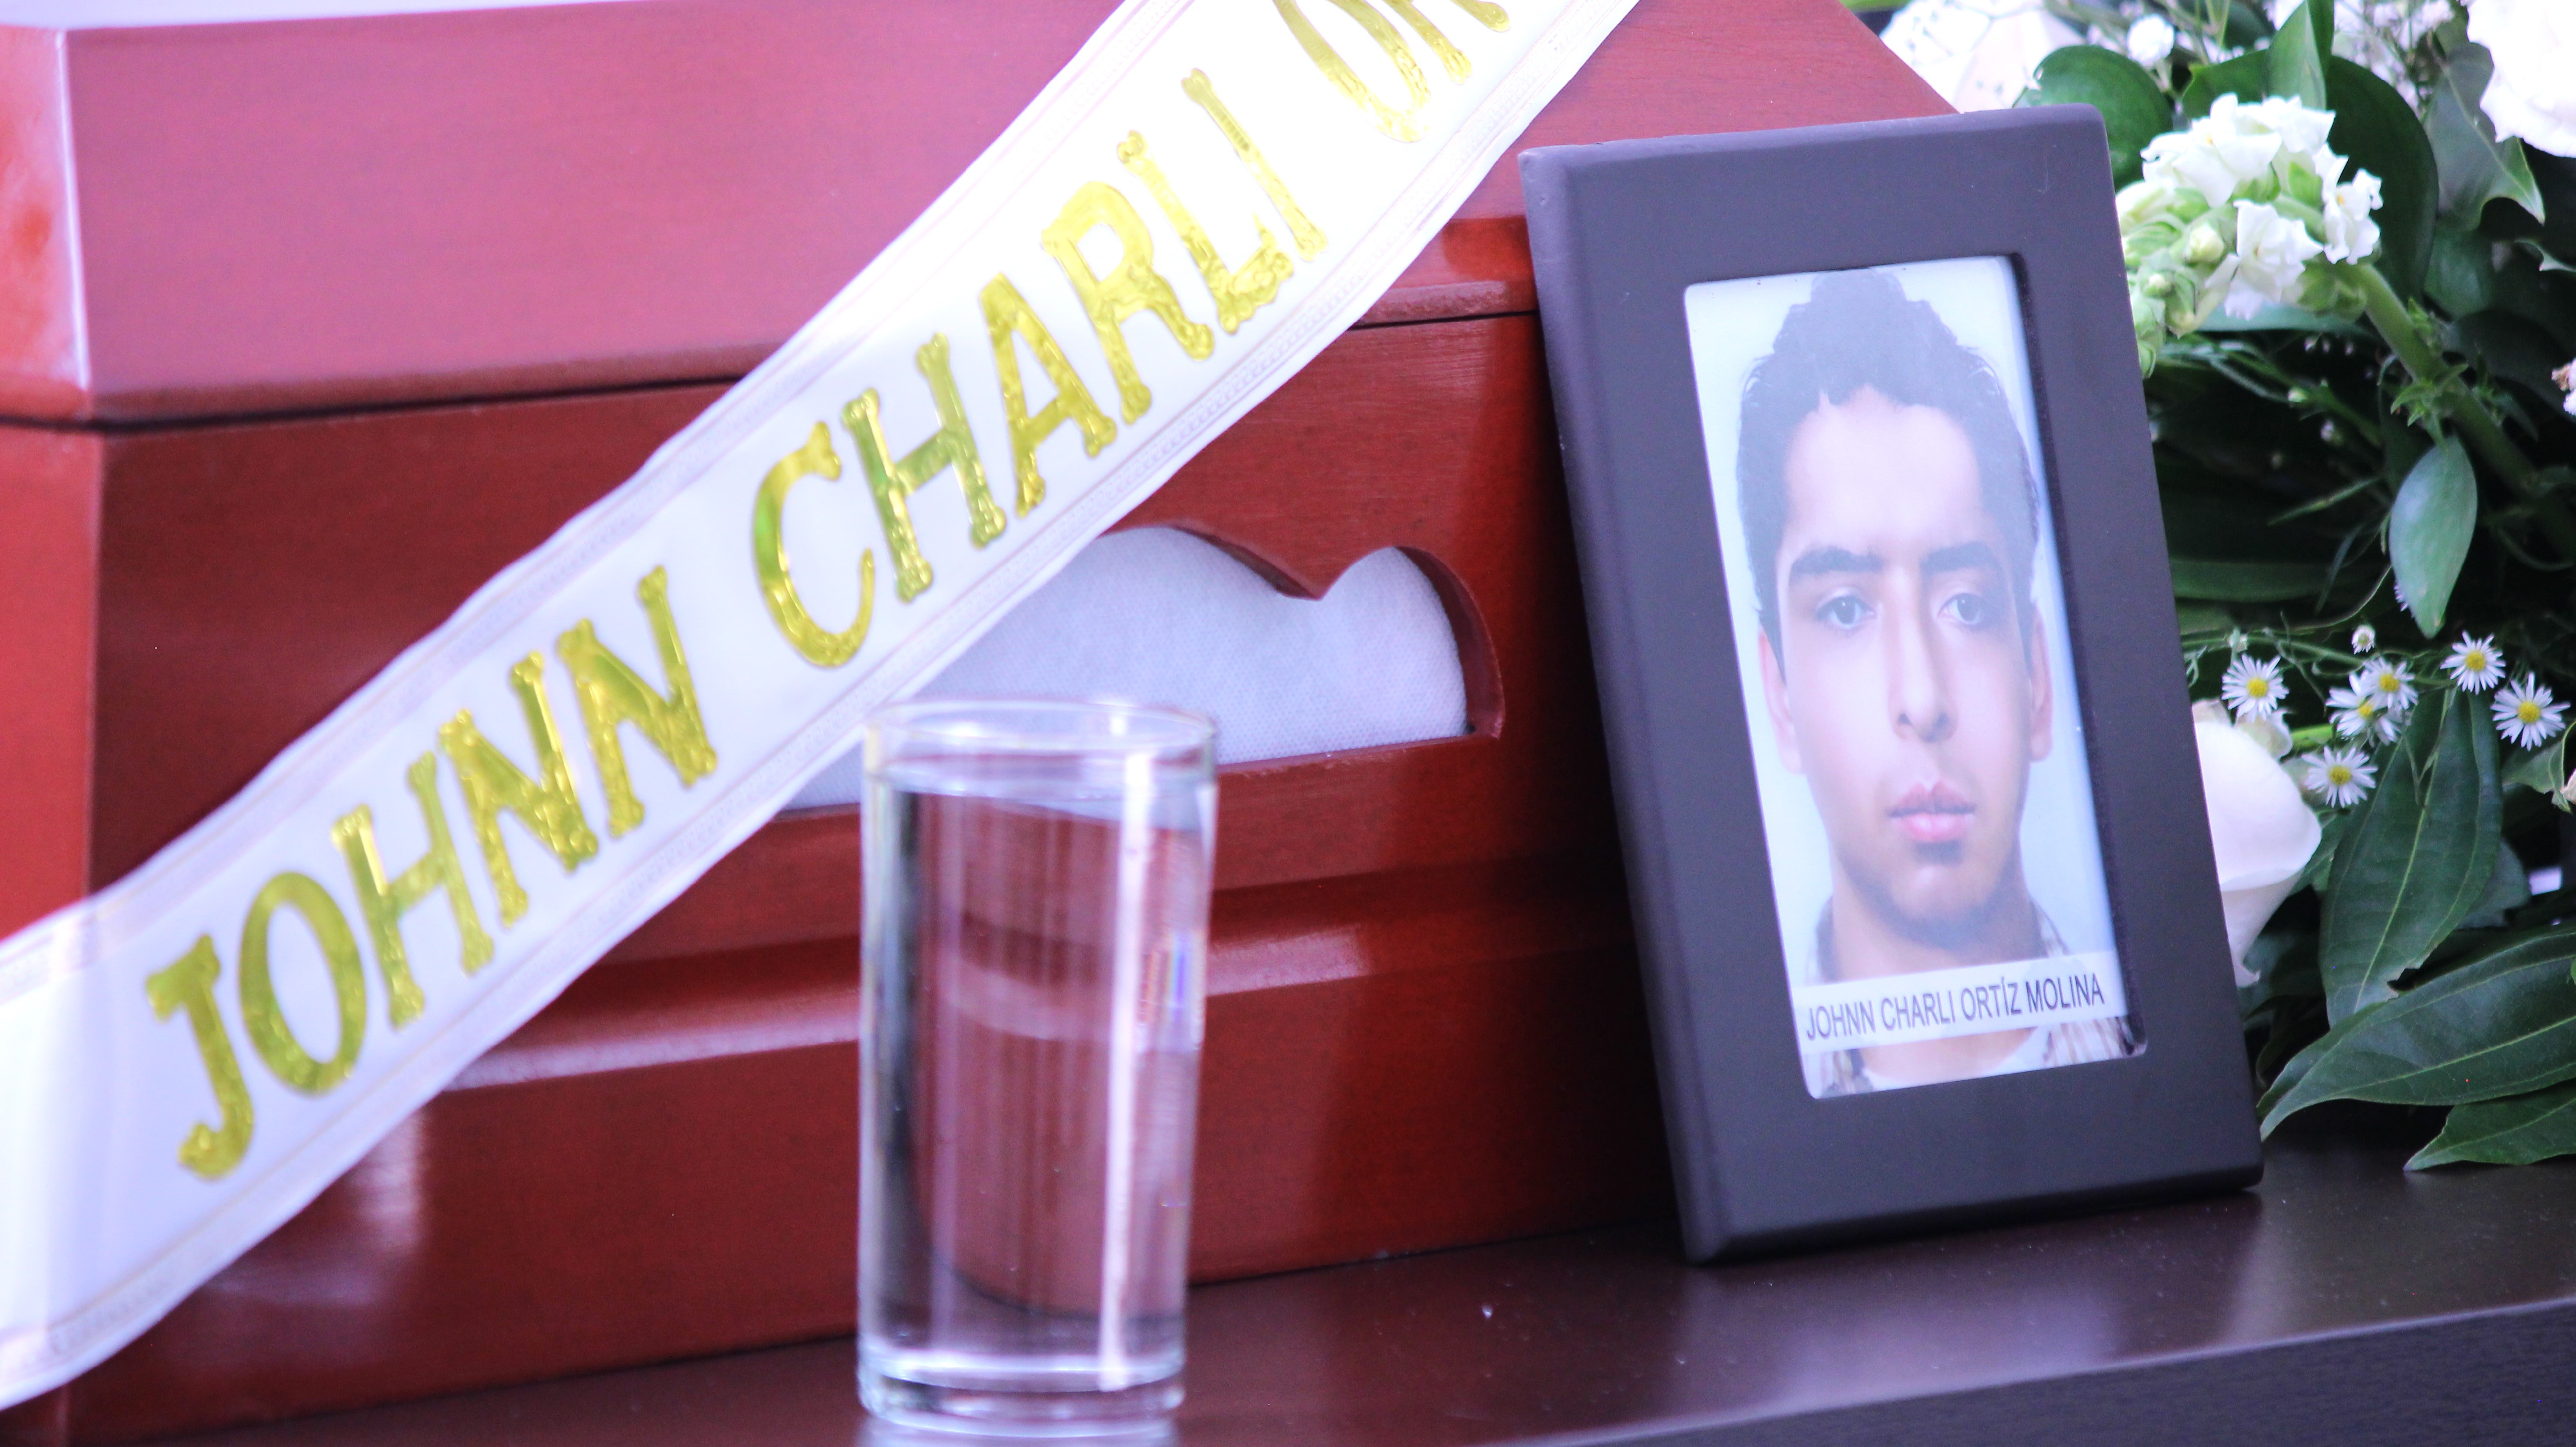 Restos de Johnn Charli Ortiz Molina, asesinado y secuestrado por las Farc-EP.